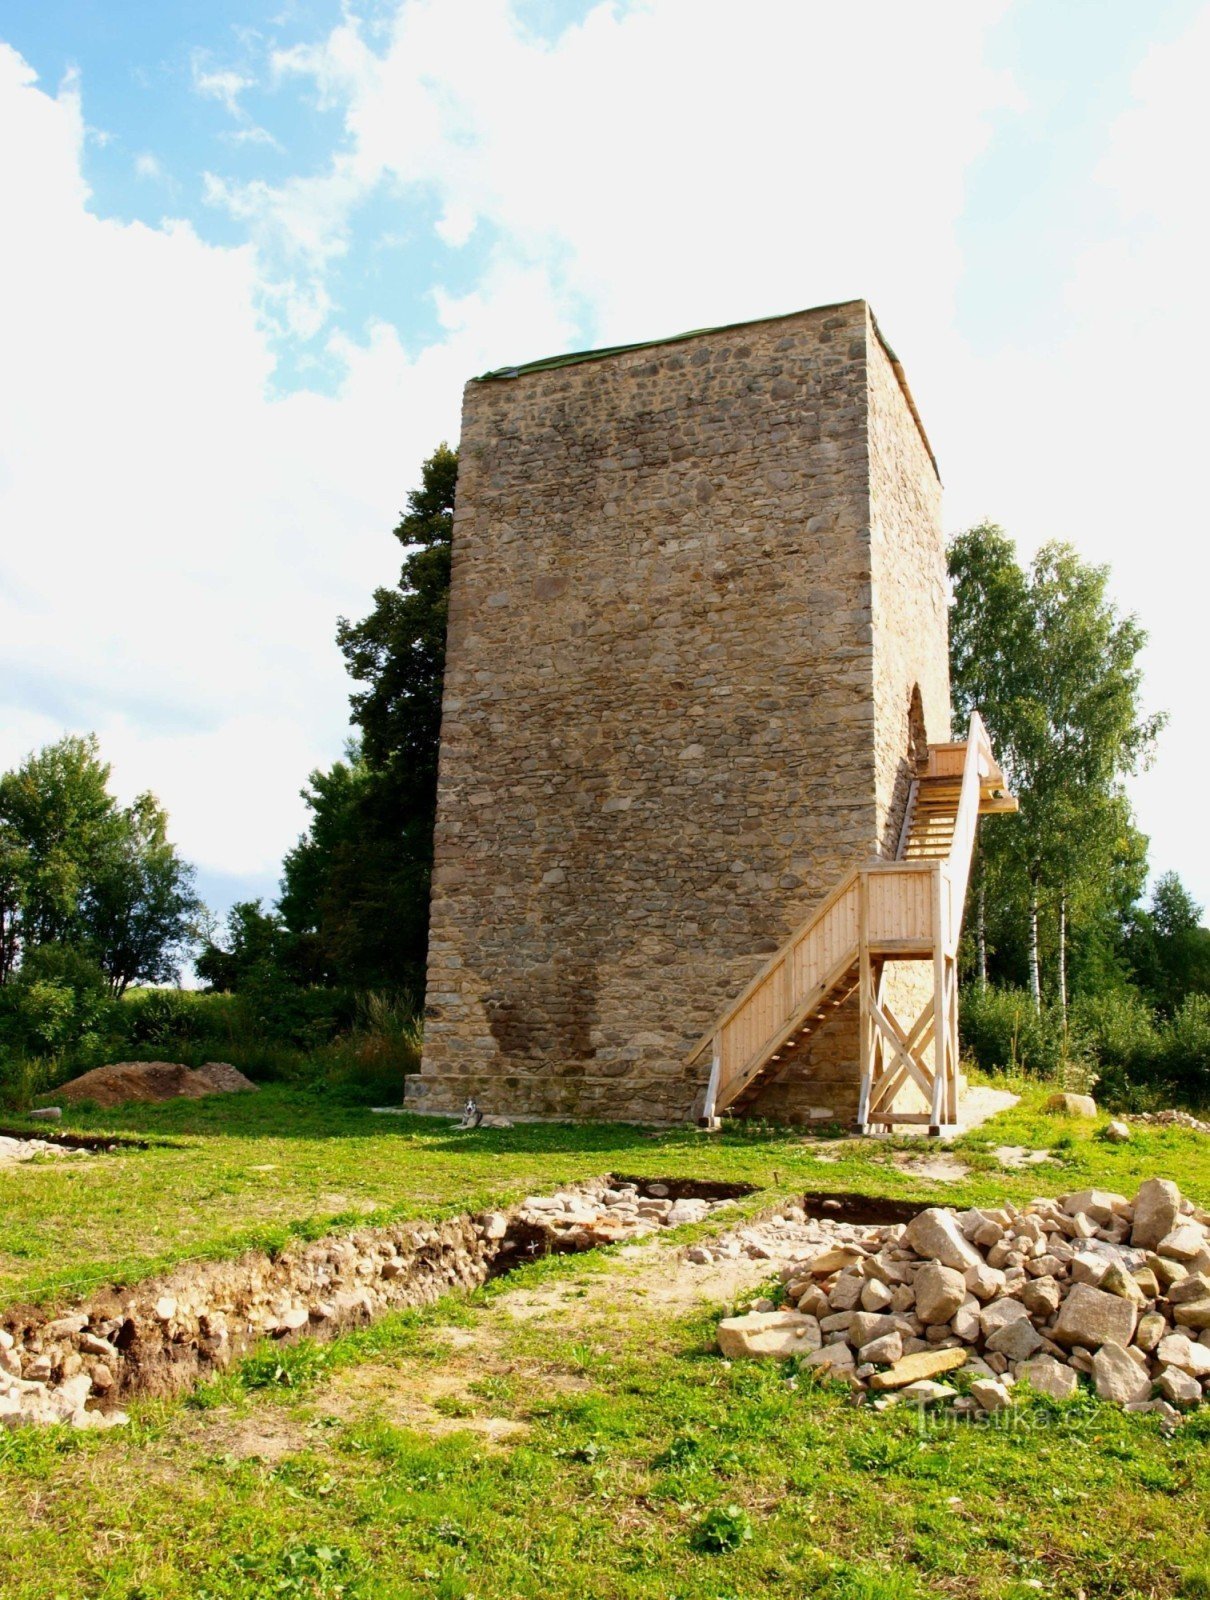 Cette année 2011, les sondages et la mise au jour d'autres murs de fondation de la forteresse ont commencé